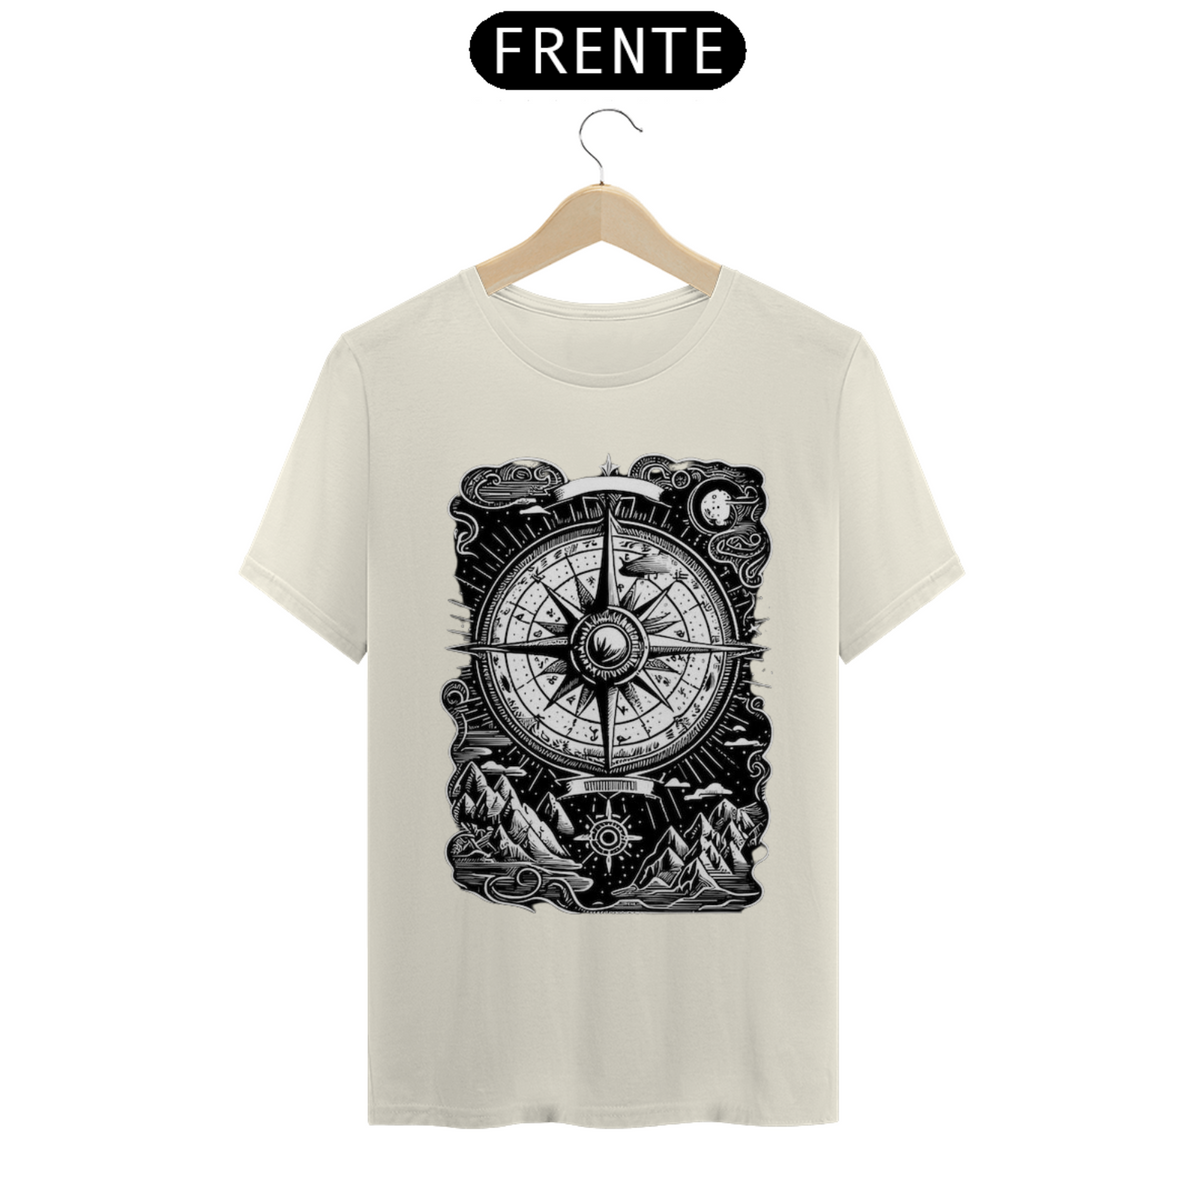 Nome do produto: T-Shirt Pima Peruana - Bússola